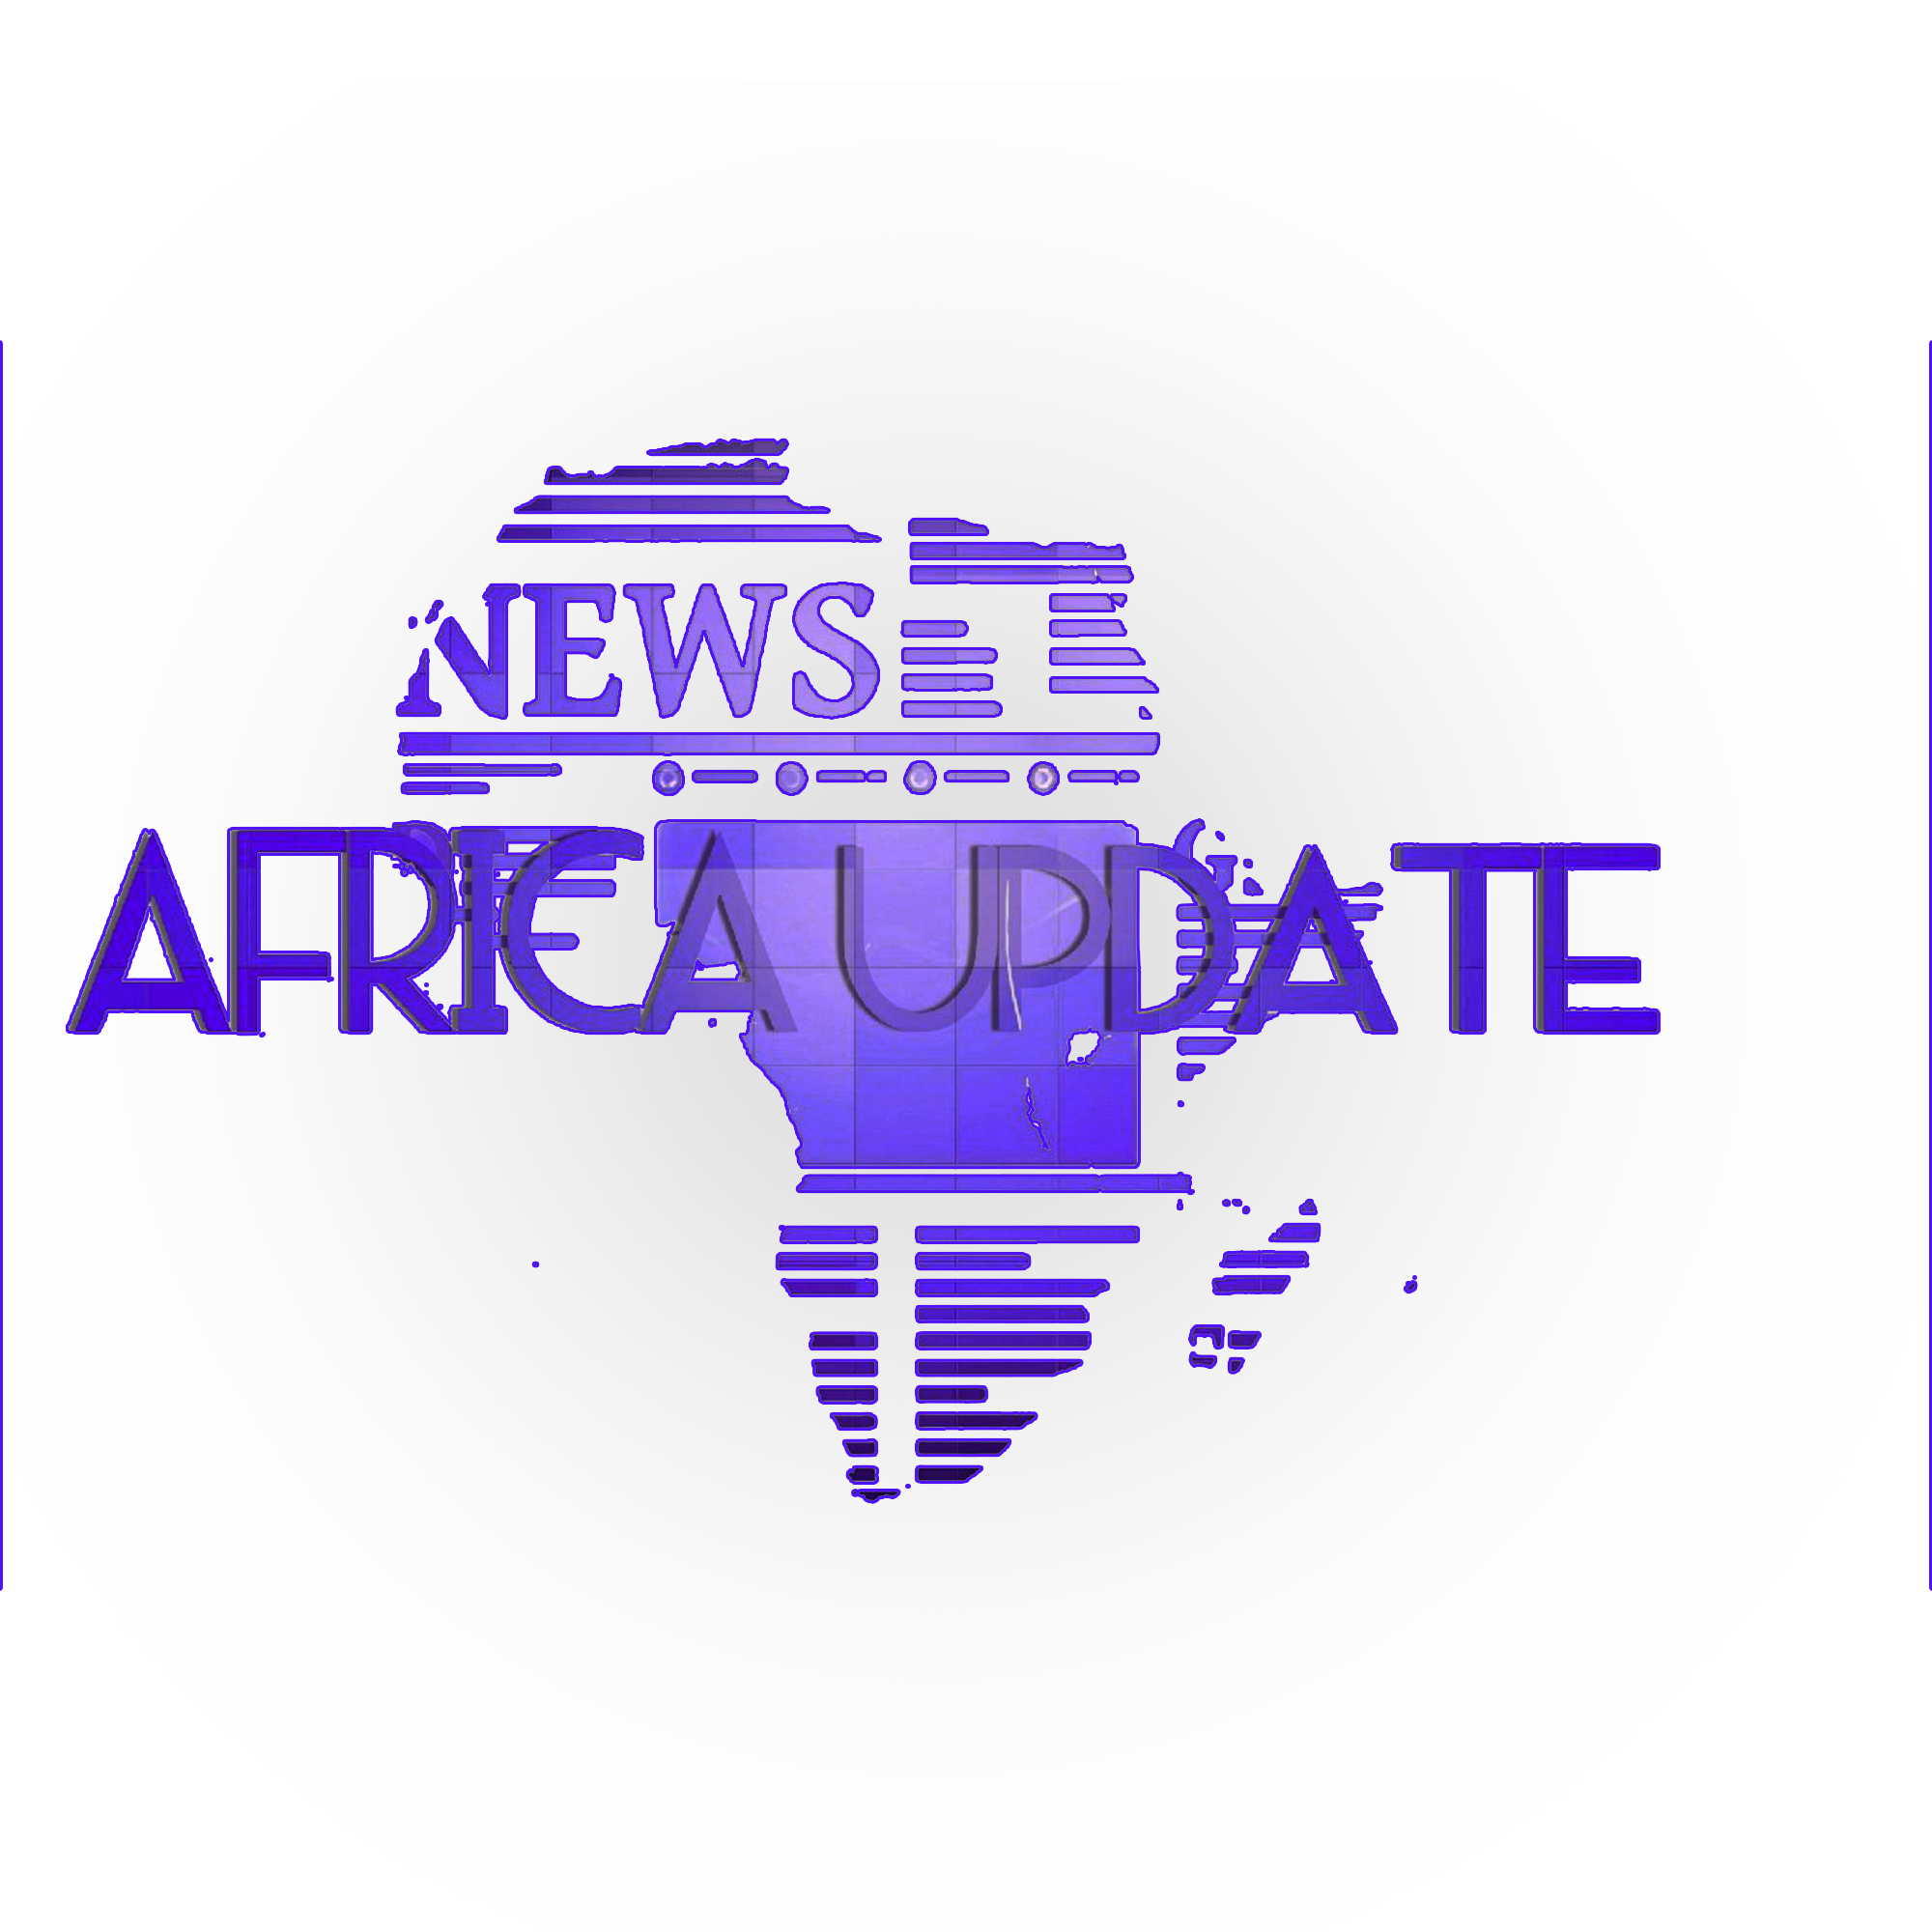 Africa Update Radio